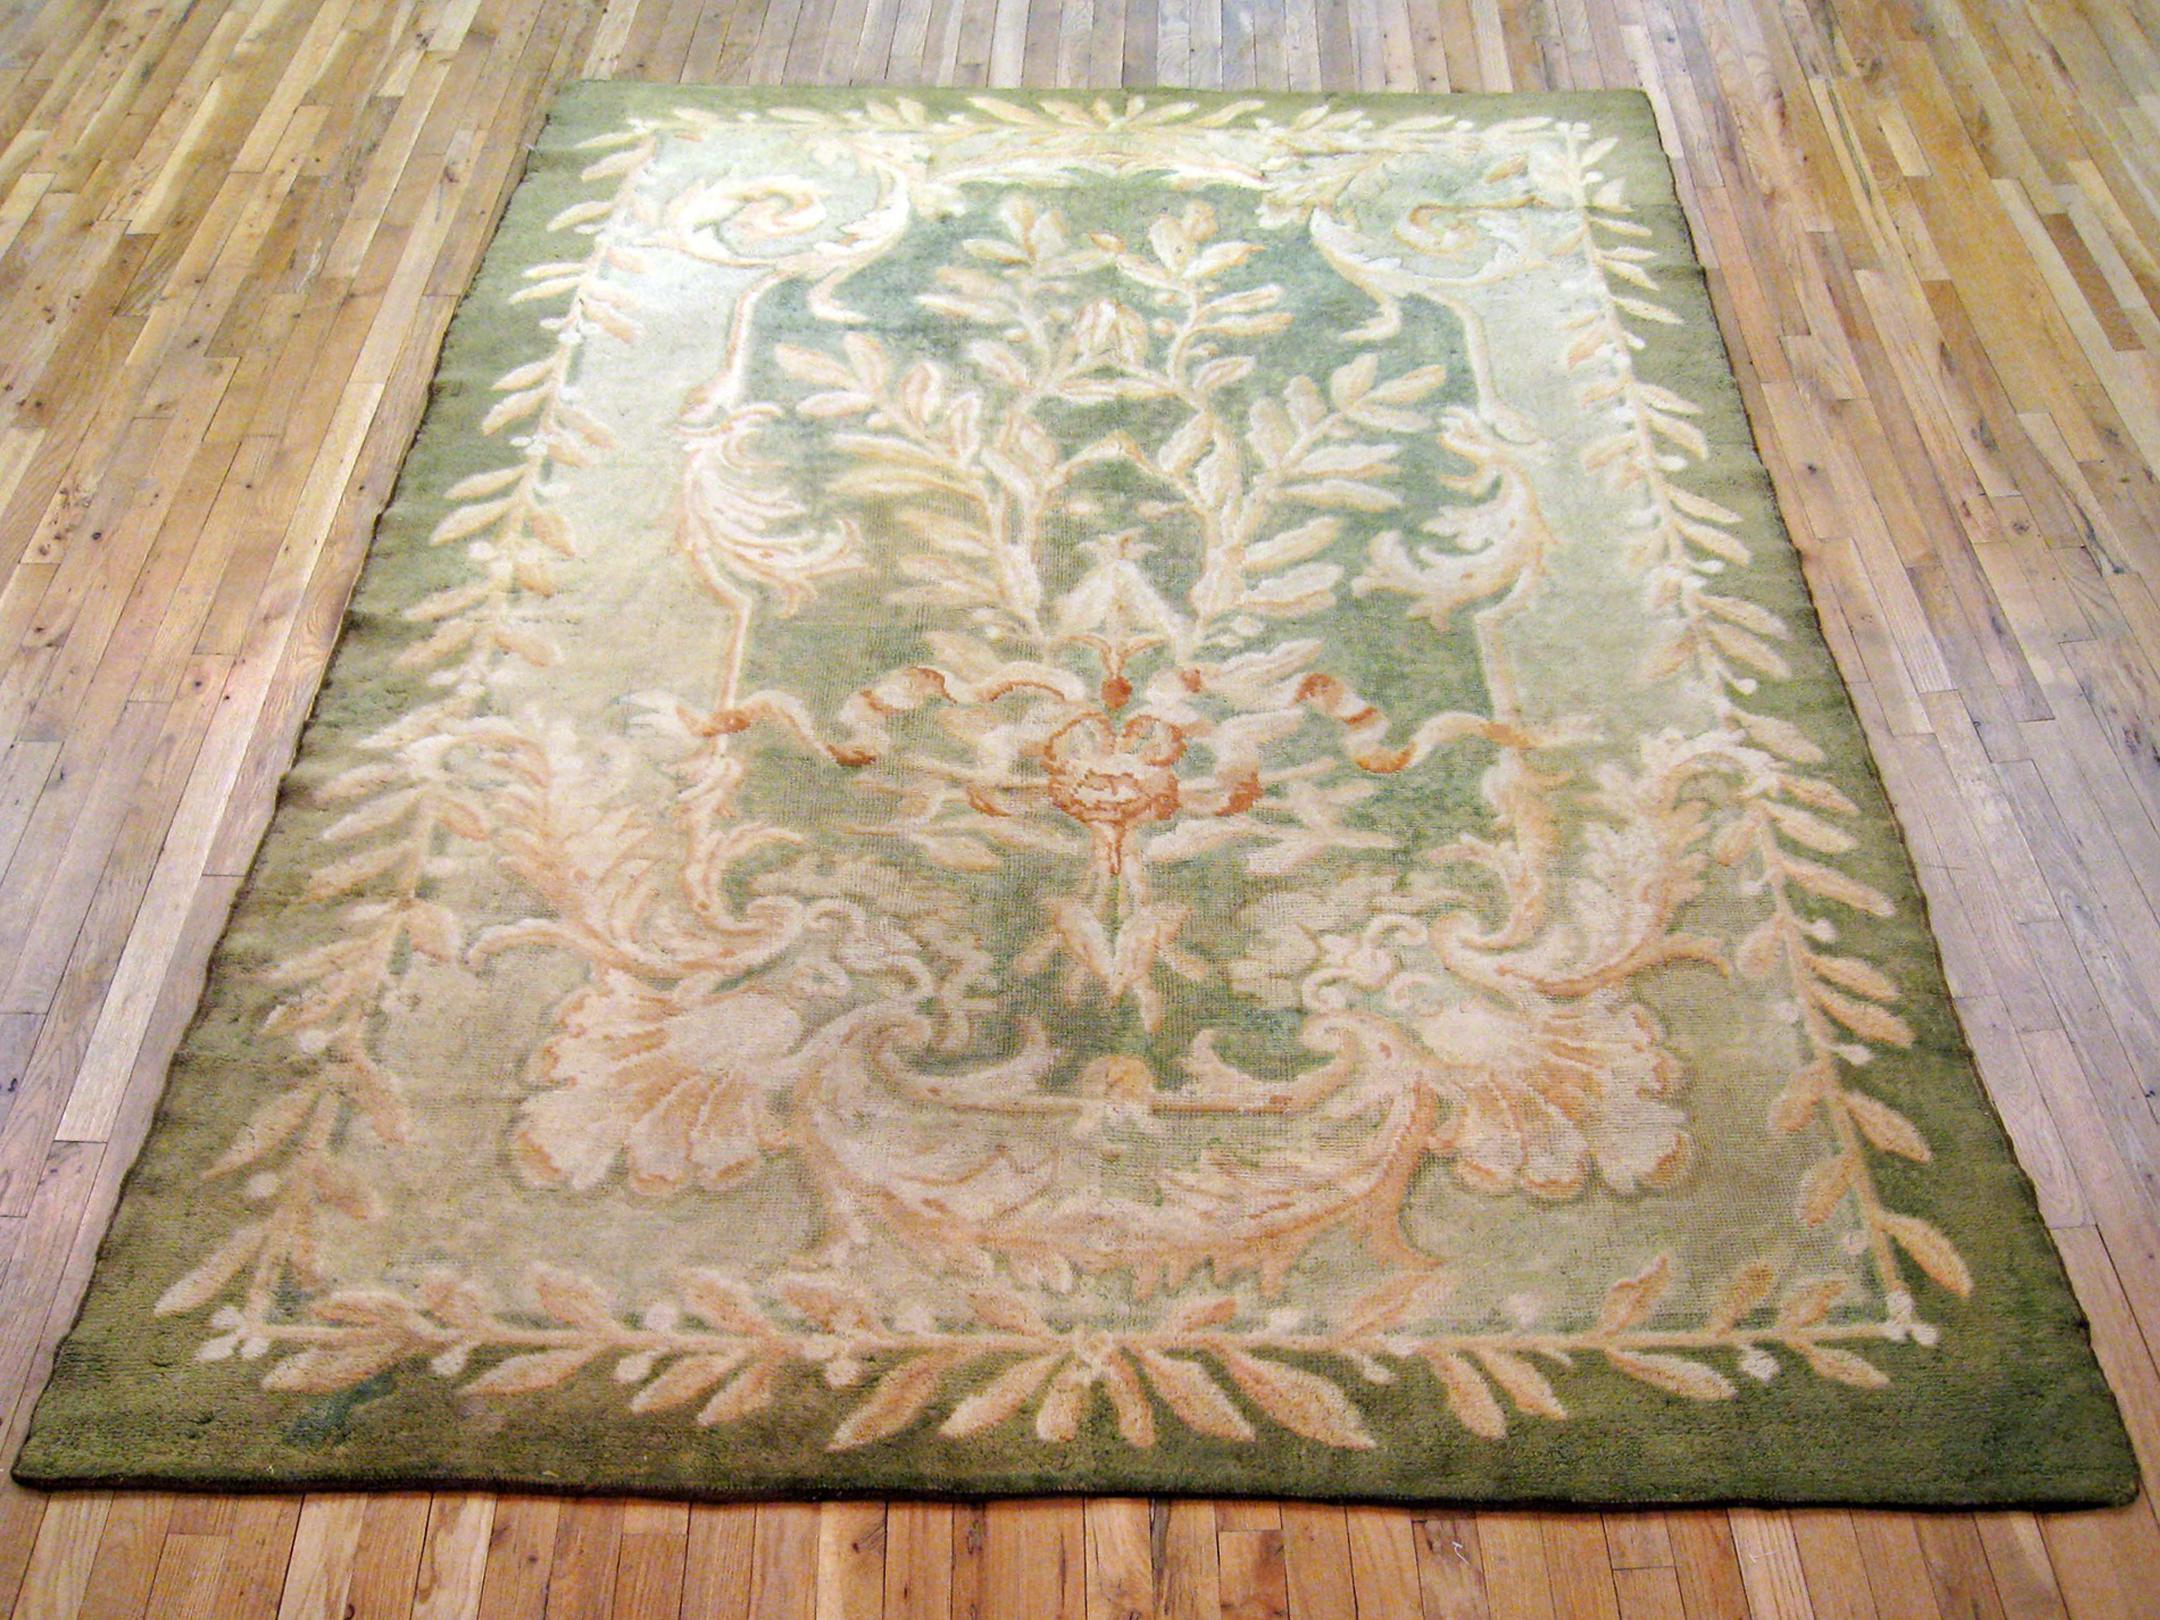 Antiker spanischer Savonnerie-Teppich, Zimmergröße, um 1910

Ein einzigartiger antiker europäischer Savonnerie-Orientalteppich, handgeknüpft mit kurzem Wollflor. Dieser schöne Teppich zeigt florale Elemente auf dem grünen Grundfeld mit